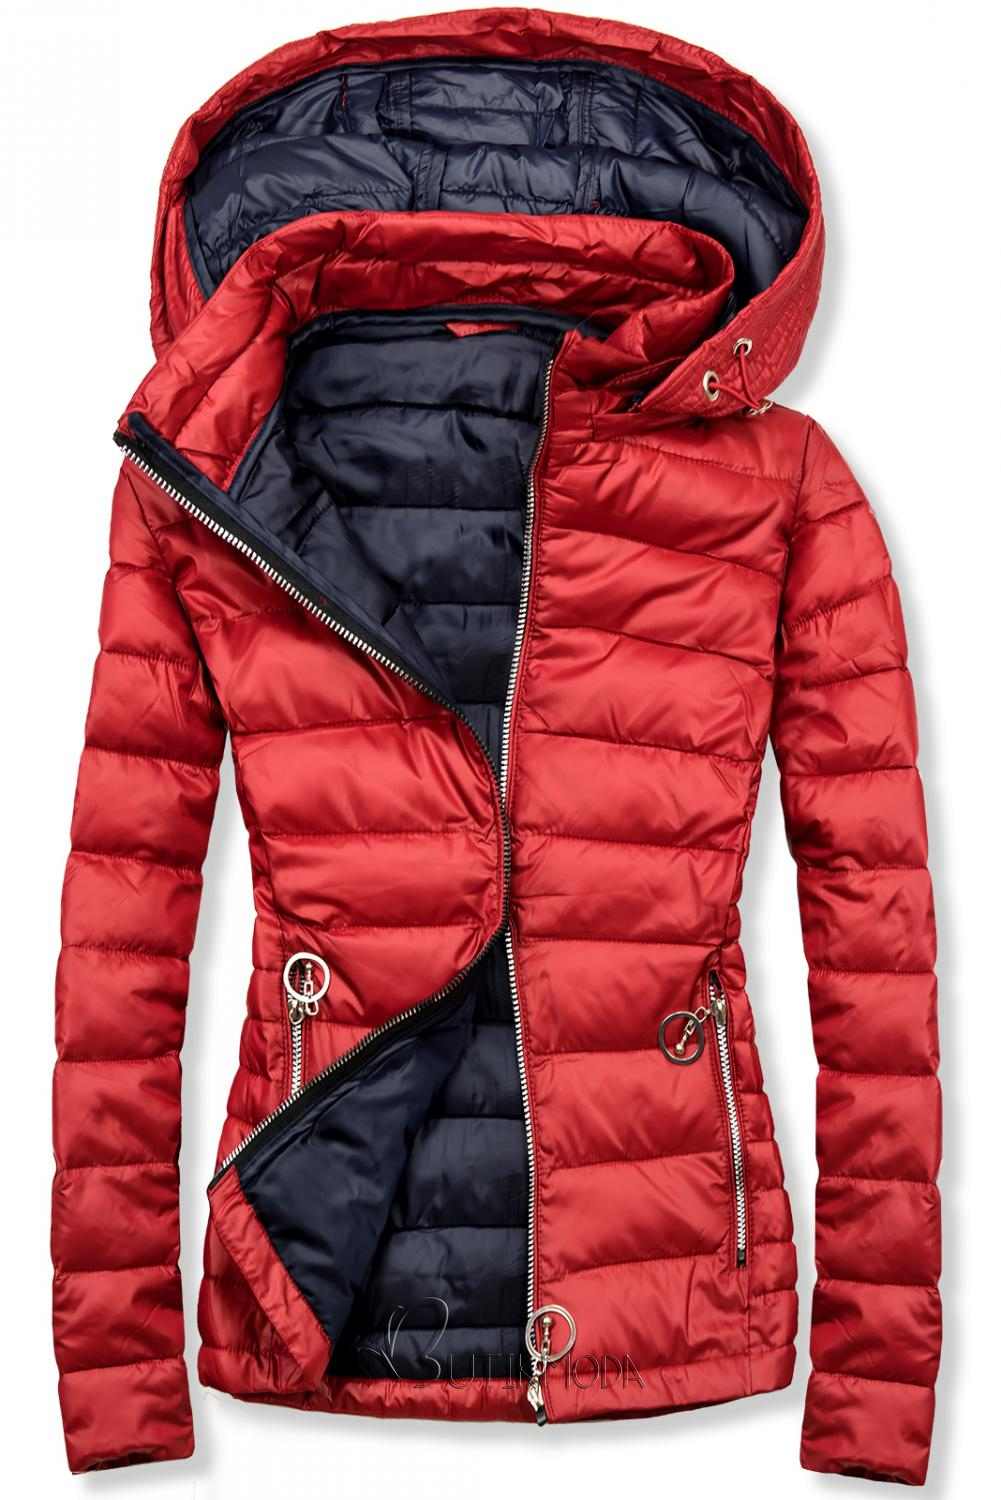 Piros és kék színű steppelt kabát